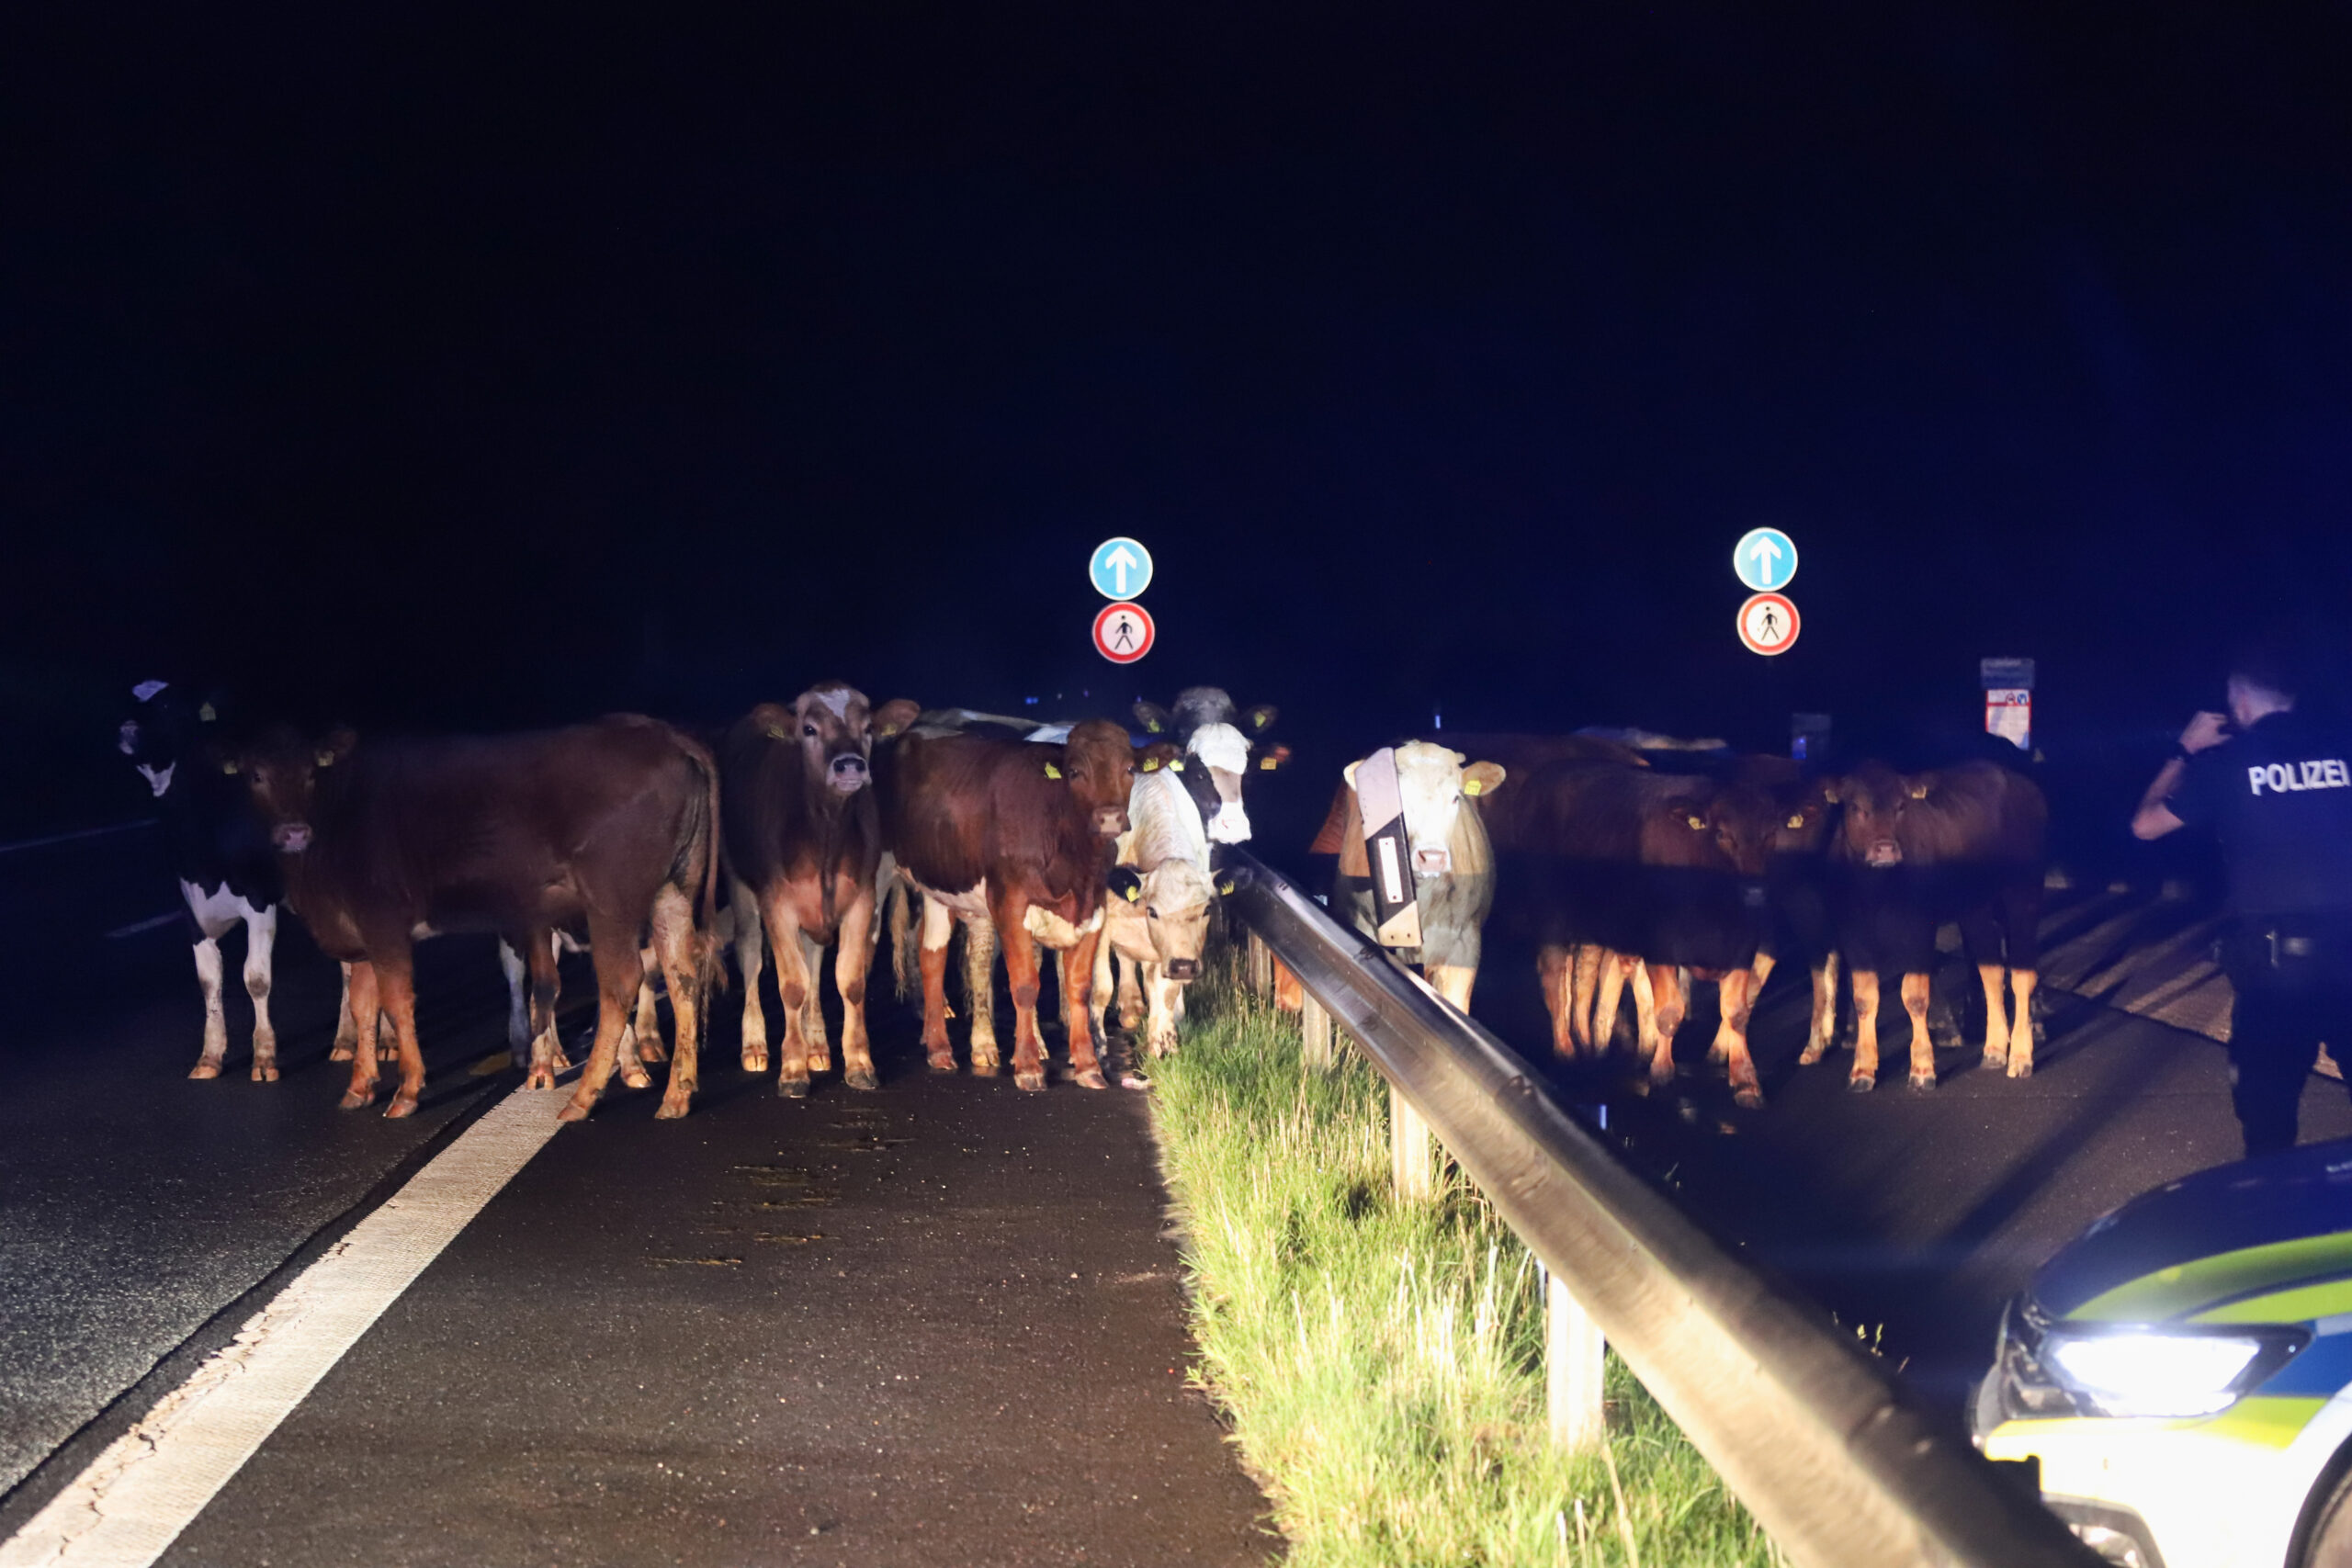 15 Rinder liefen auf der A23 umher. Woher sie stammen, ist unklar.